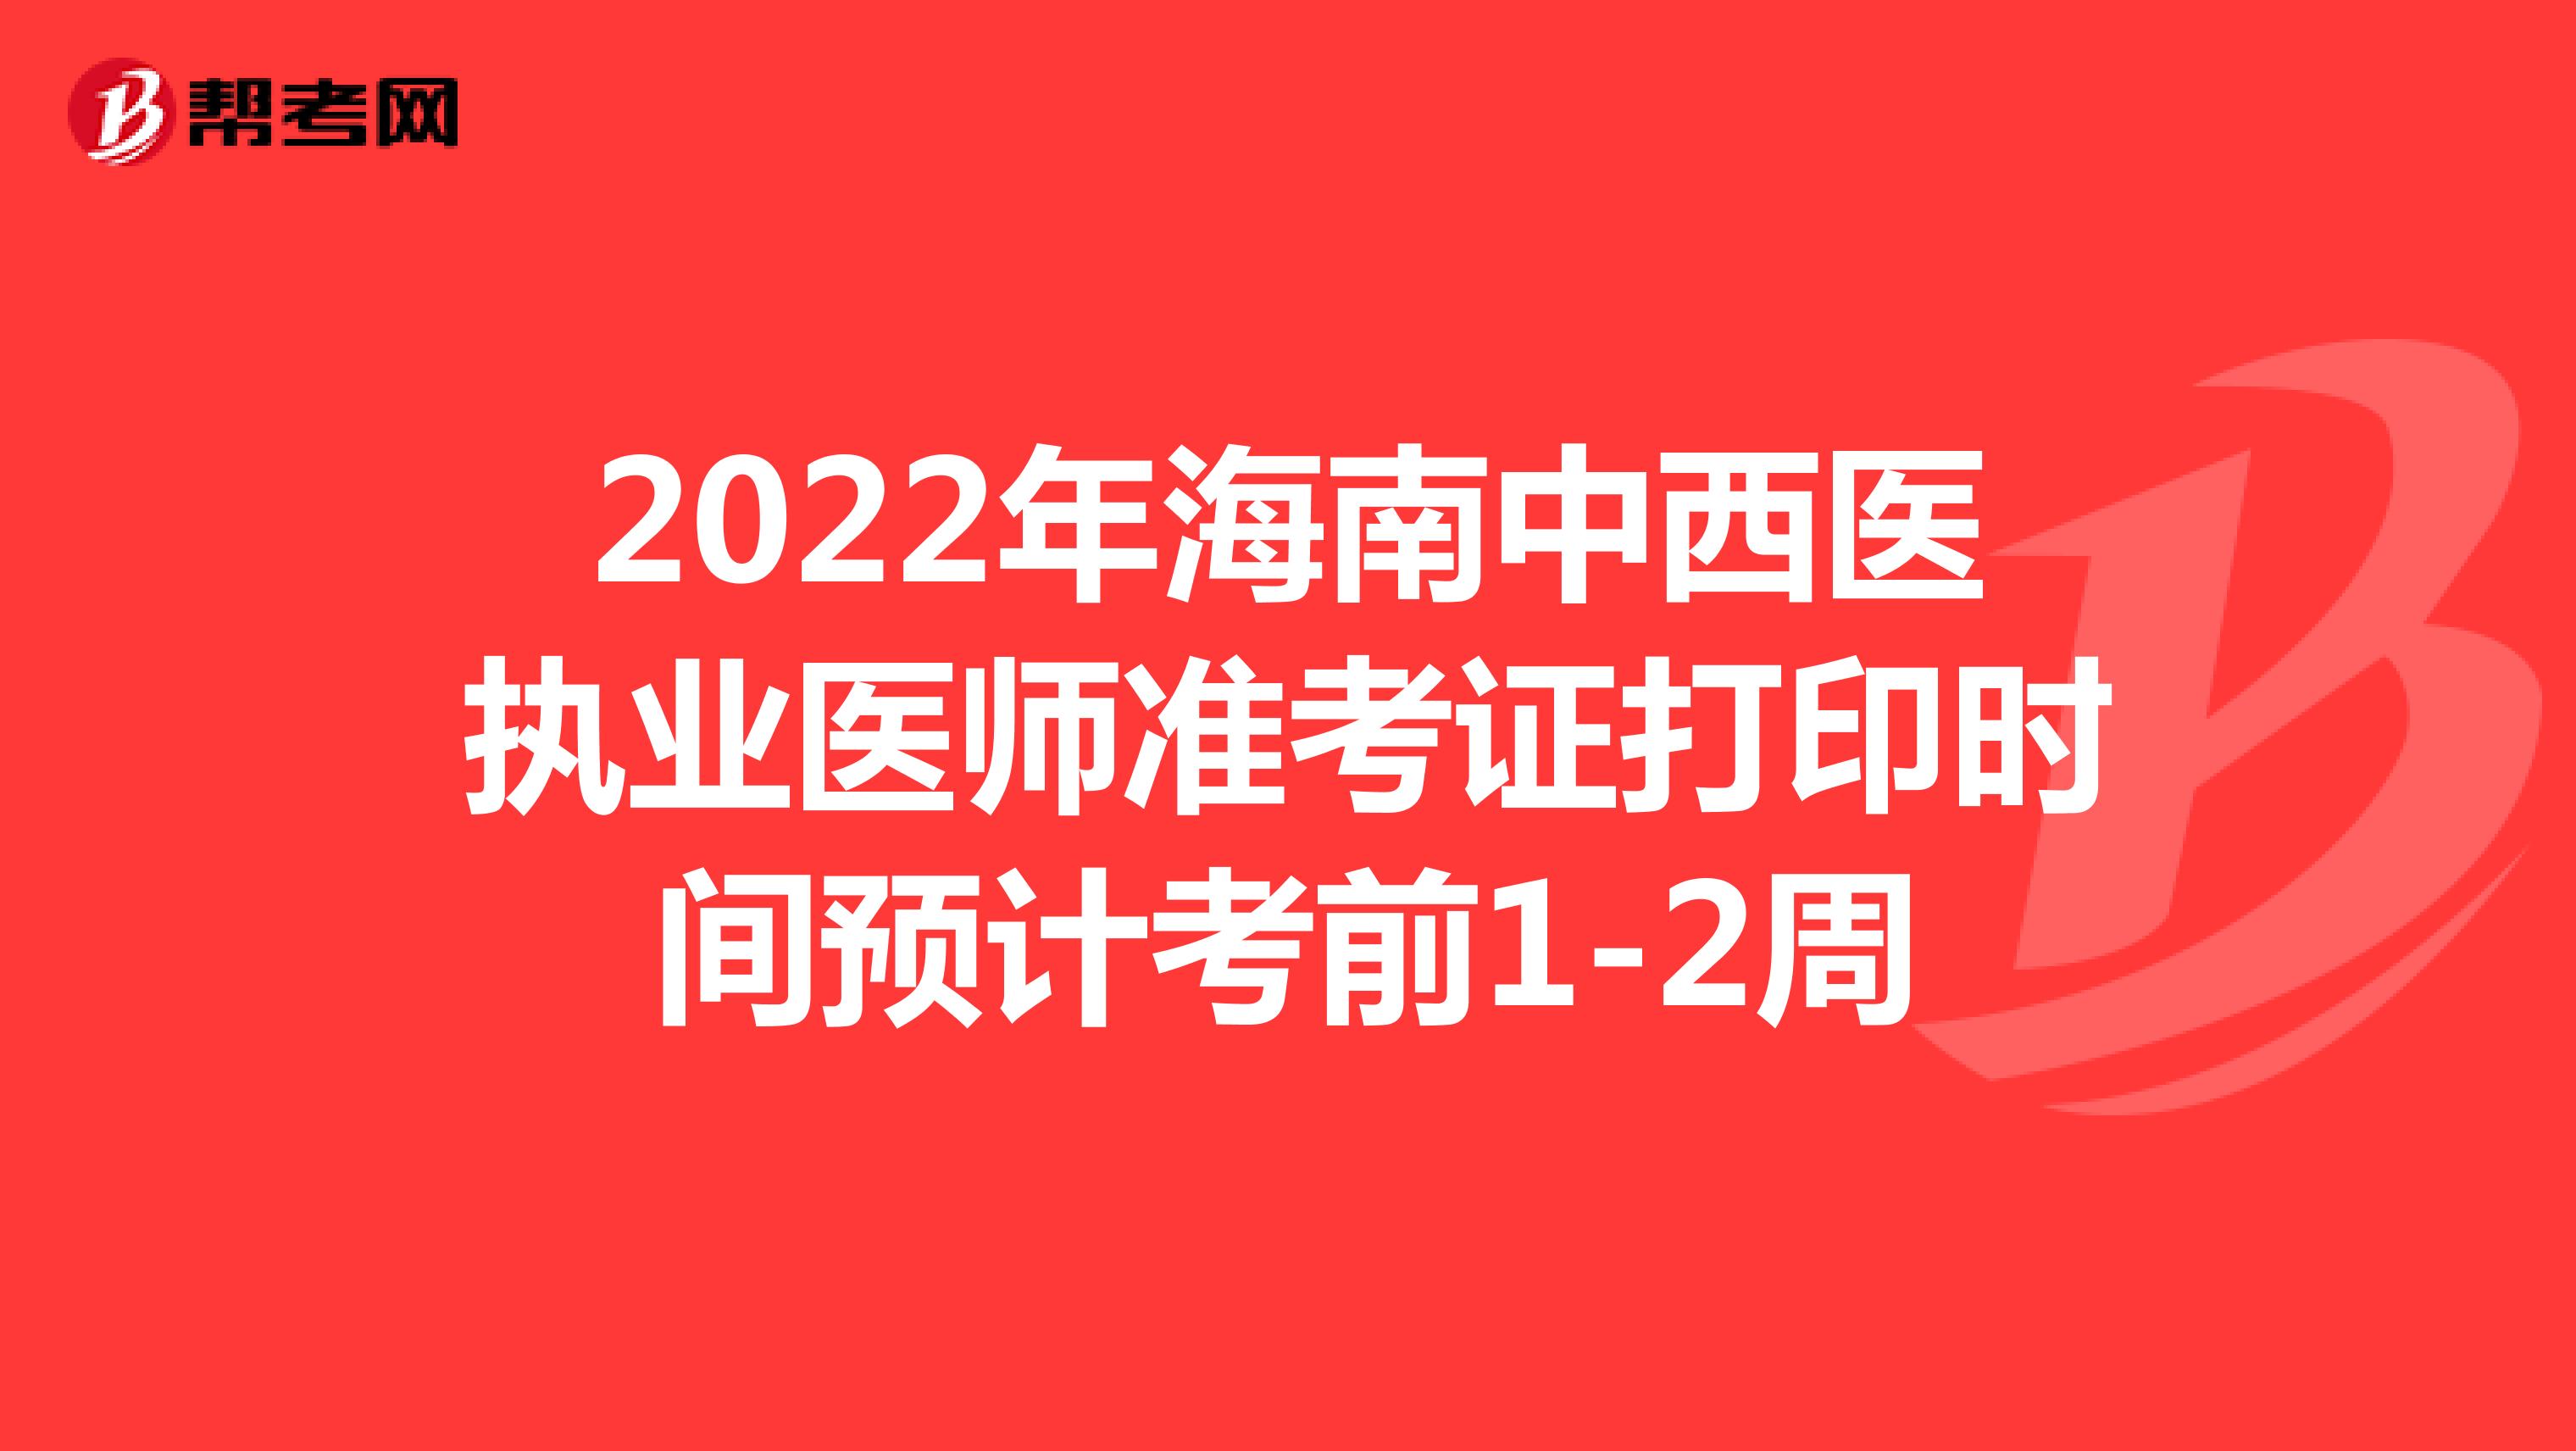 2022年海南中西医执业医师准考证打印时间预计考前1-2周